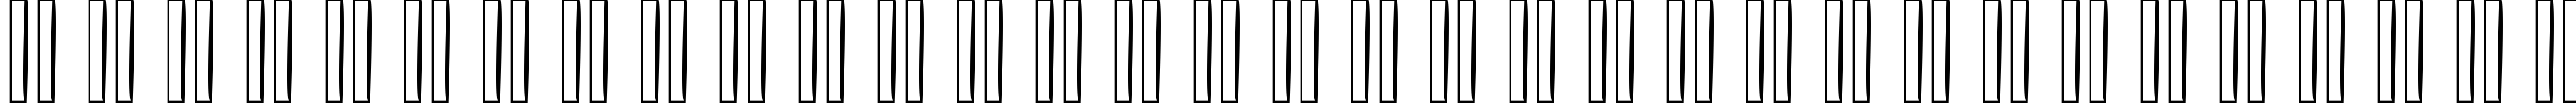 Пример написания русского алфавита шрифтом Big_Bottom_Typeface_Normal